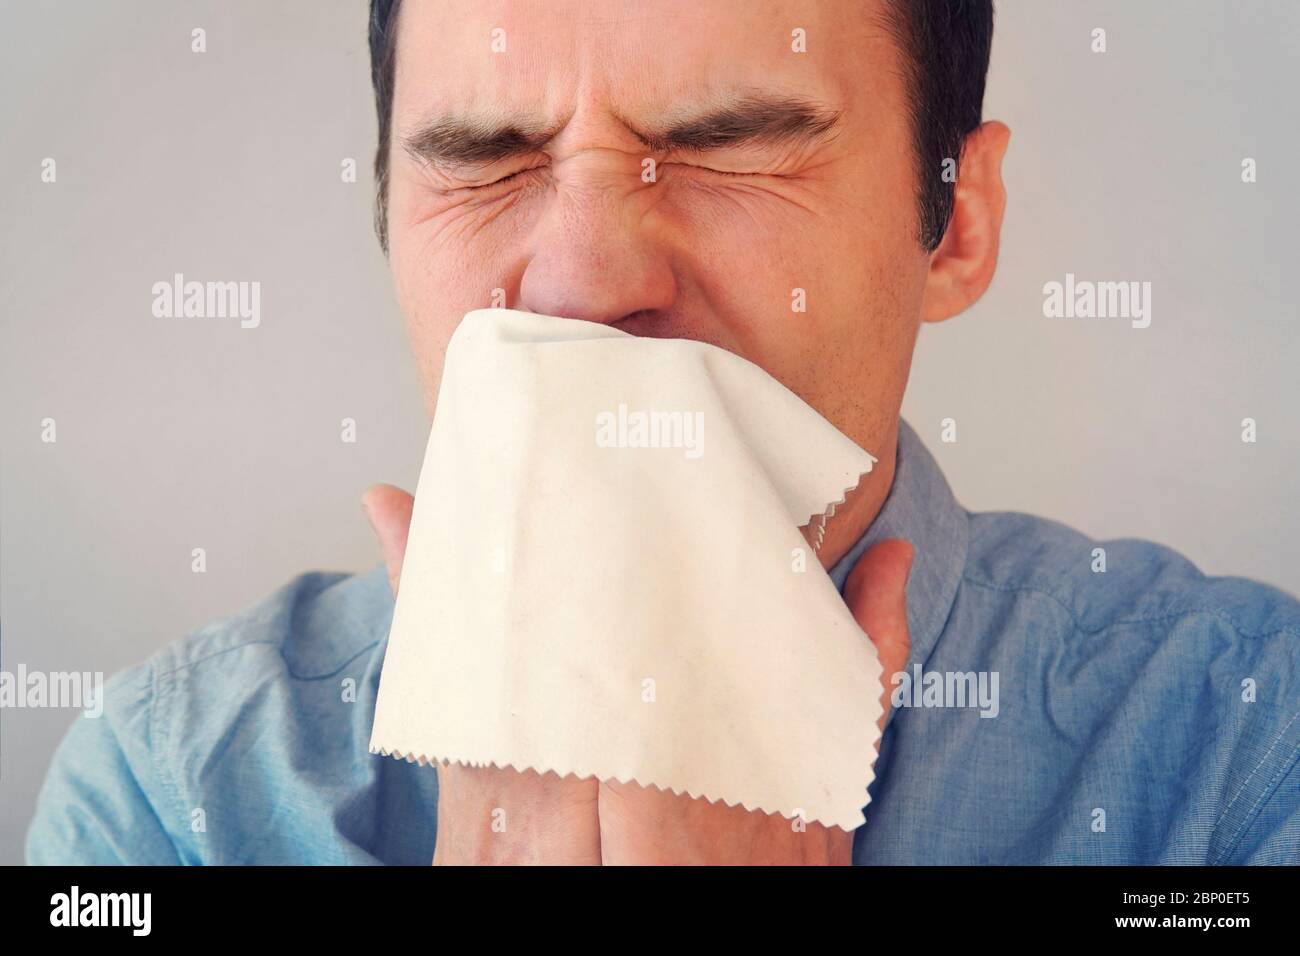 Geschäftsmann bläst seine Nase in einen Lappen. Junger Mann niest in Gewebe. Kerl ist krank, hat eine Erkältung oder allergische Reaktion. Coronavirus, Epidemie 2020, Krankheit Stockfoto